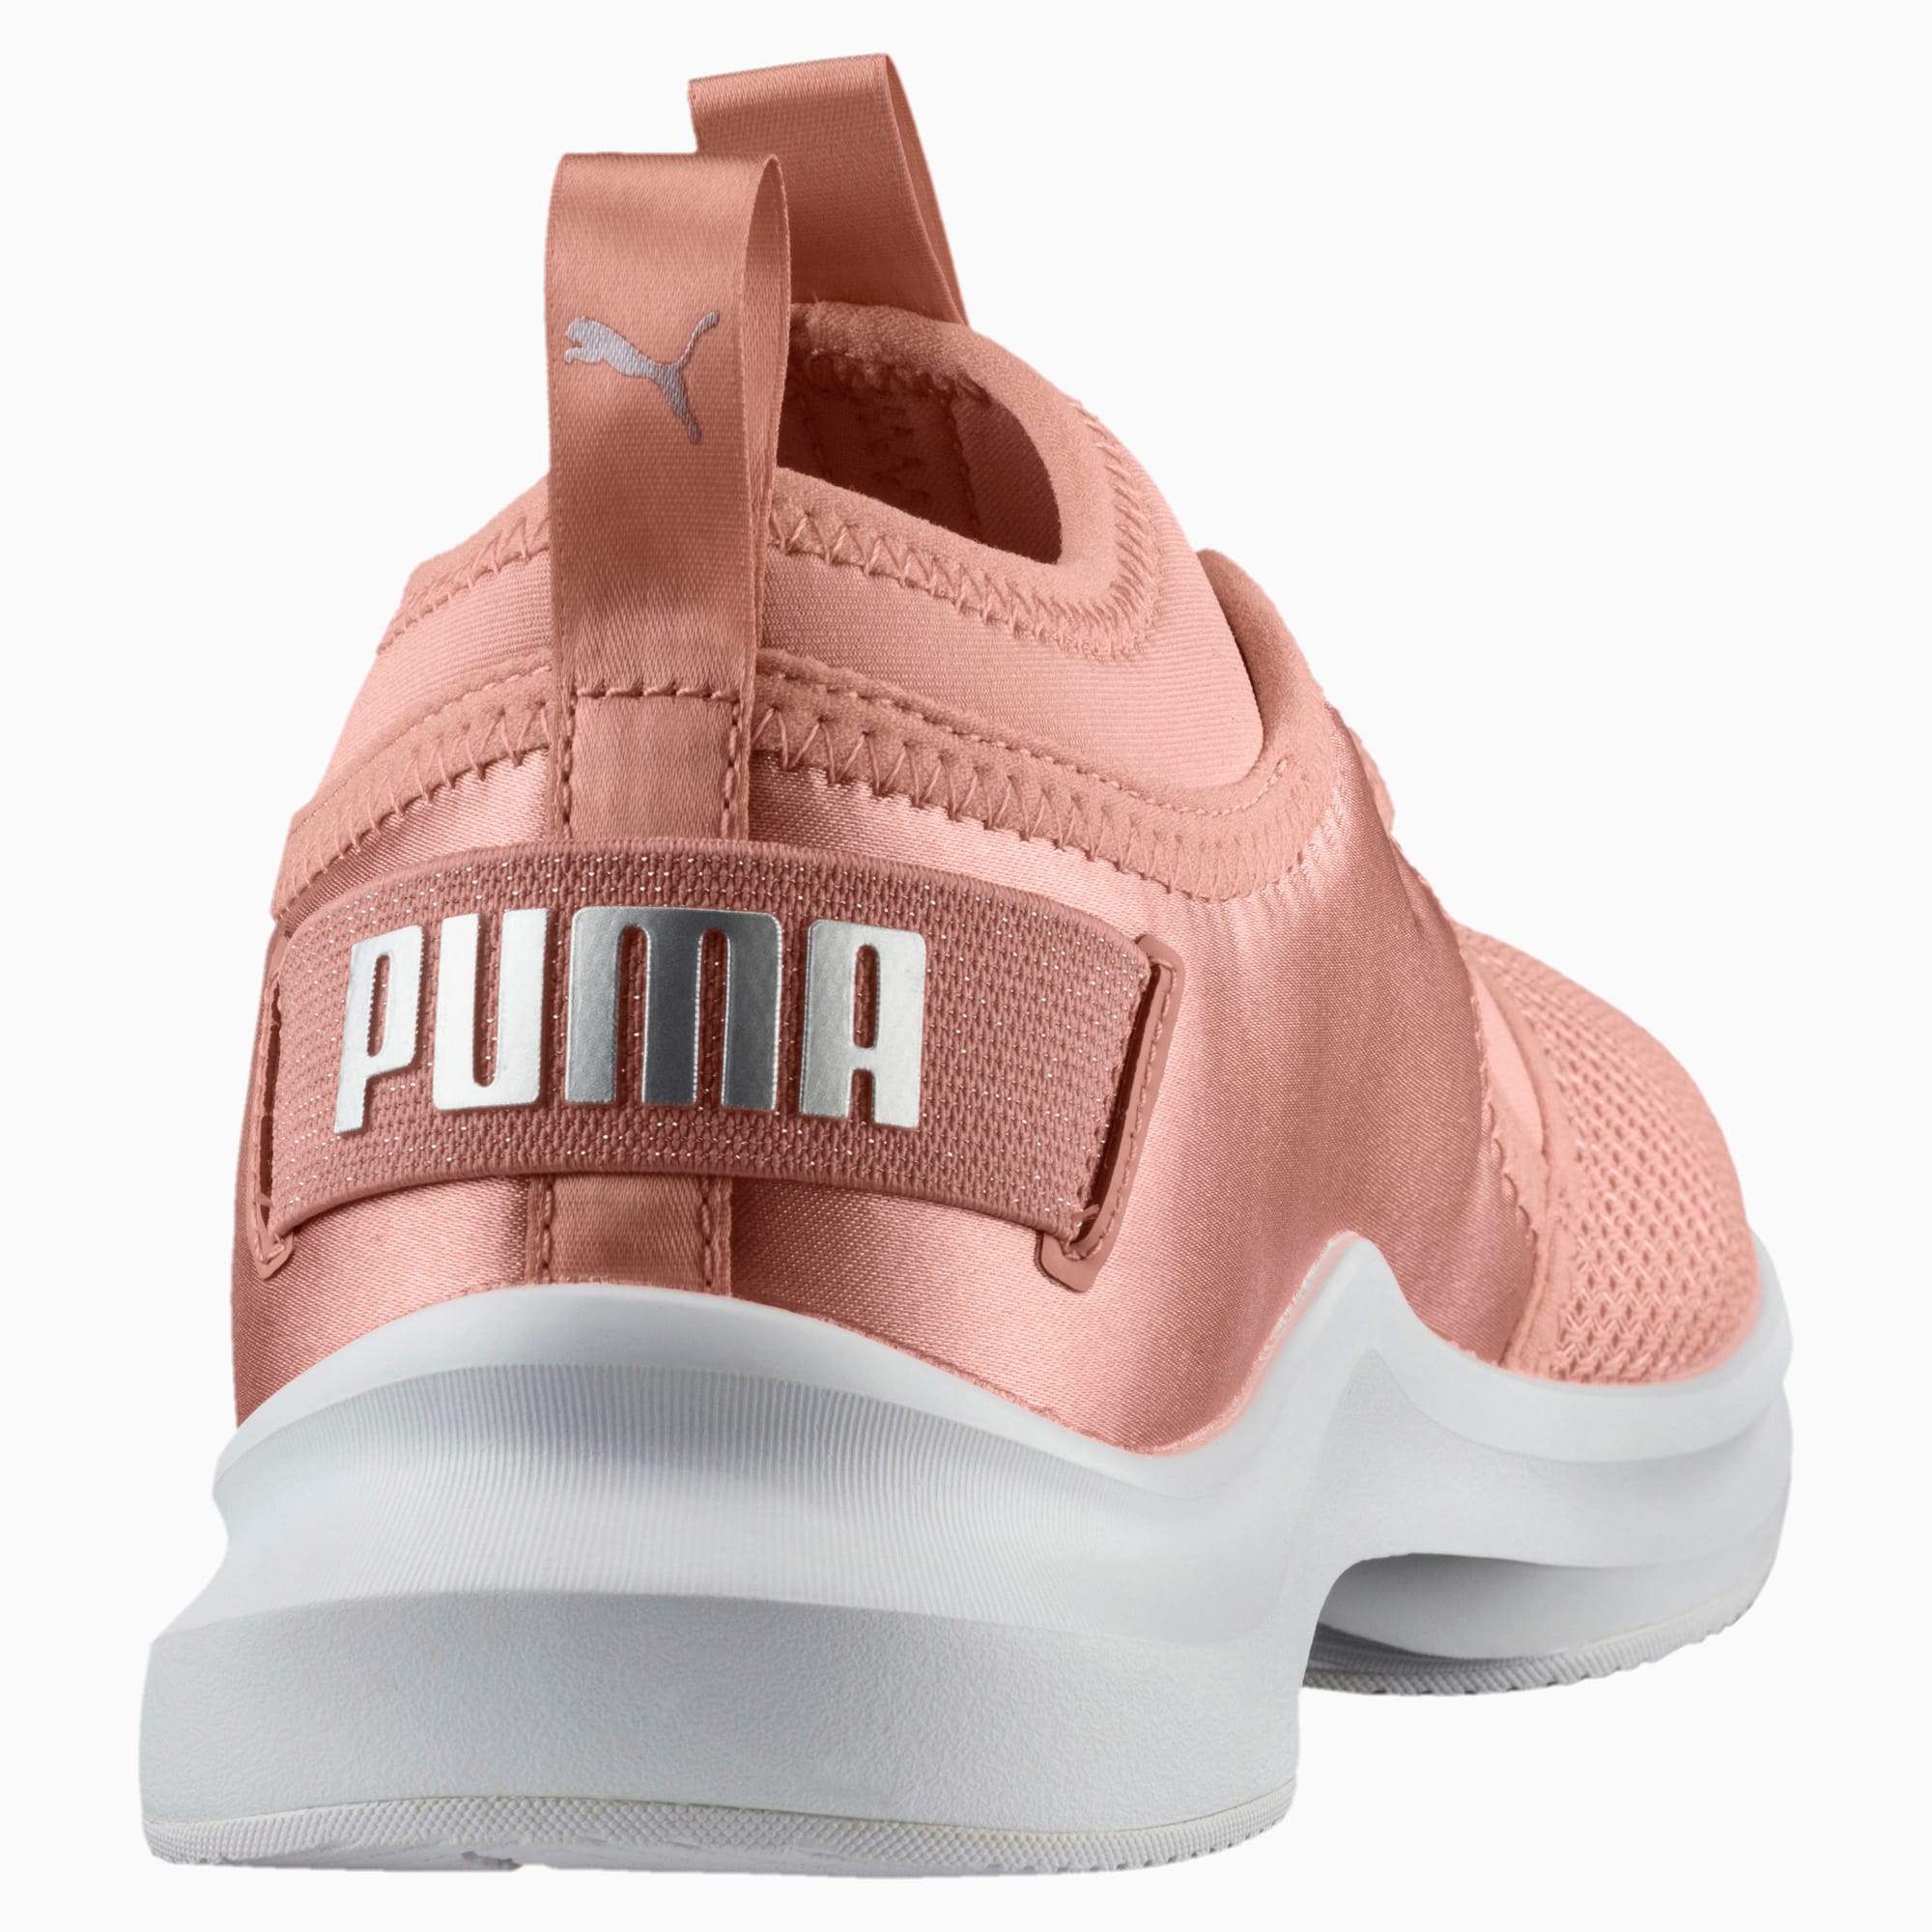 puma phenom women's training shoes